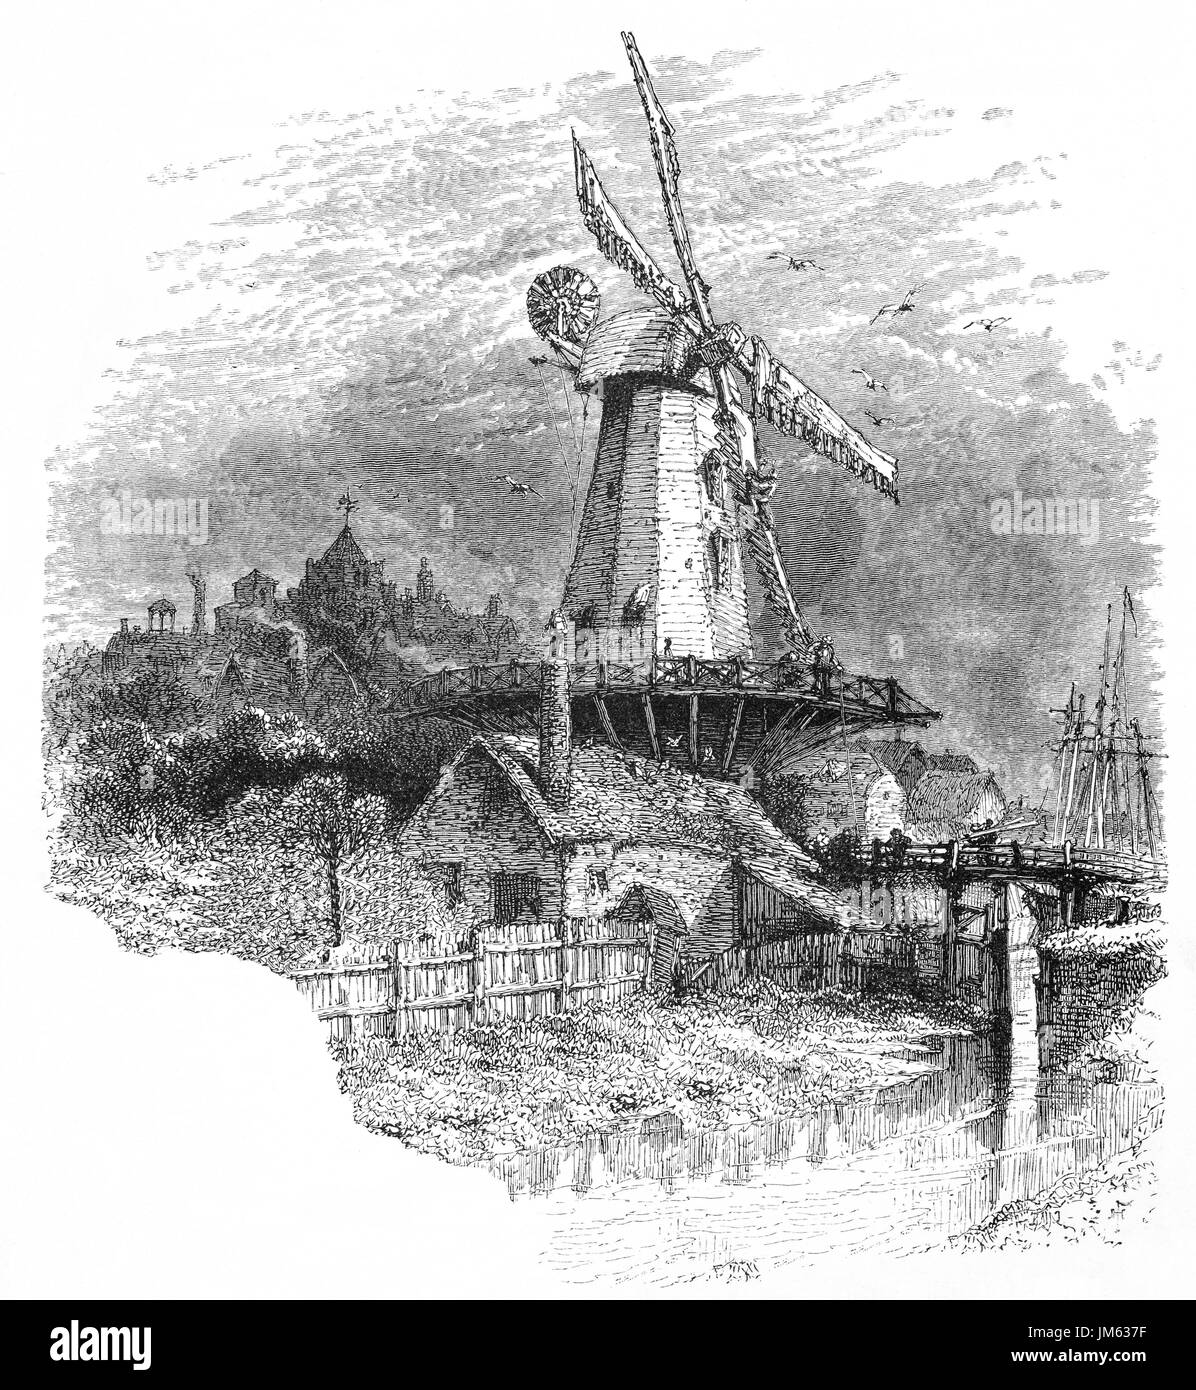 1870 : l'ancien moulin, alias Moulin gibet ou Barry's Mill. Un moulin est resté sur le site depuis 1596, et une usine de poste est connu pour avoir été construit ici en 1758. Gibbet Mill a été construit en 1824, le nom Barry's Mill provenant d'un début de Miller. Le seigle, une petite ville de l'East Sussex, dans le comté historique de Sussex, Angleterre. Banque D'Images